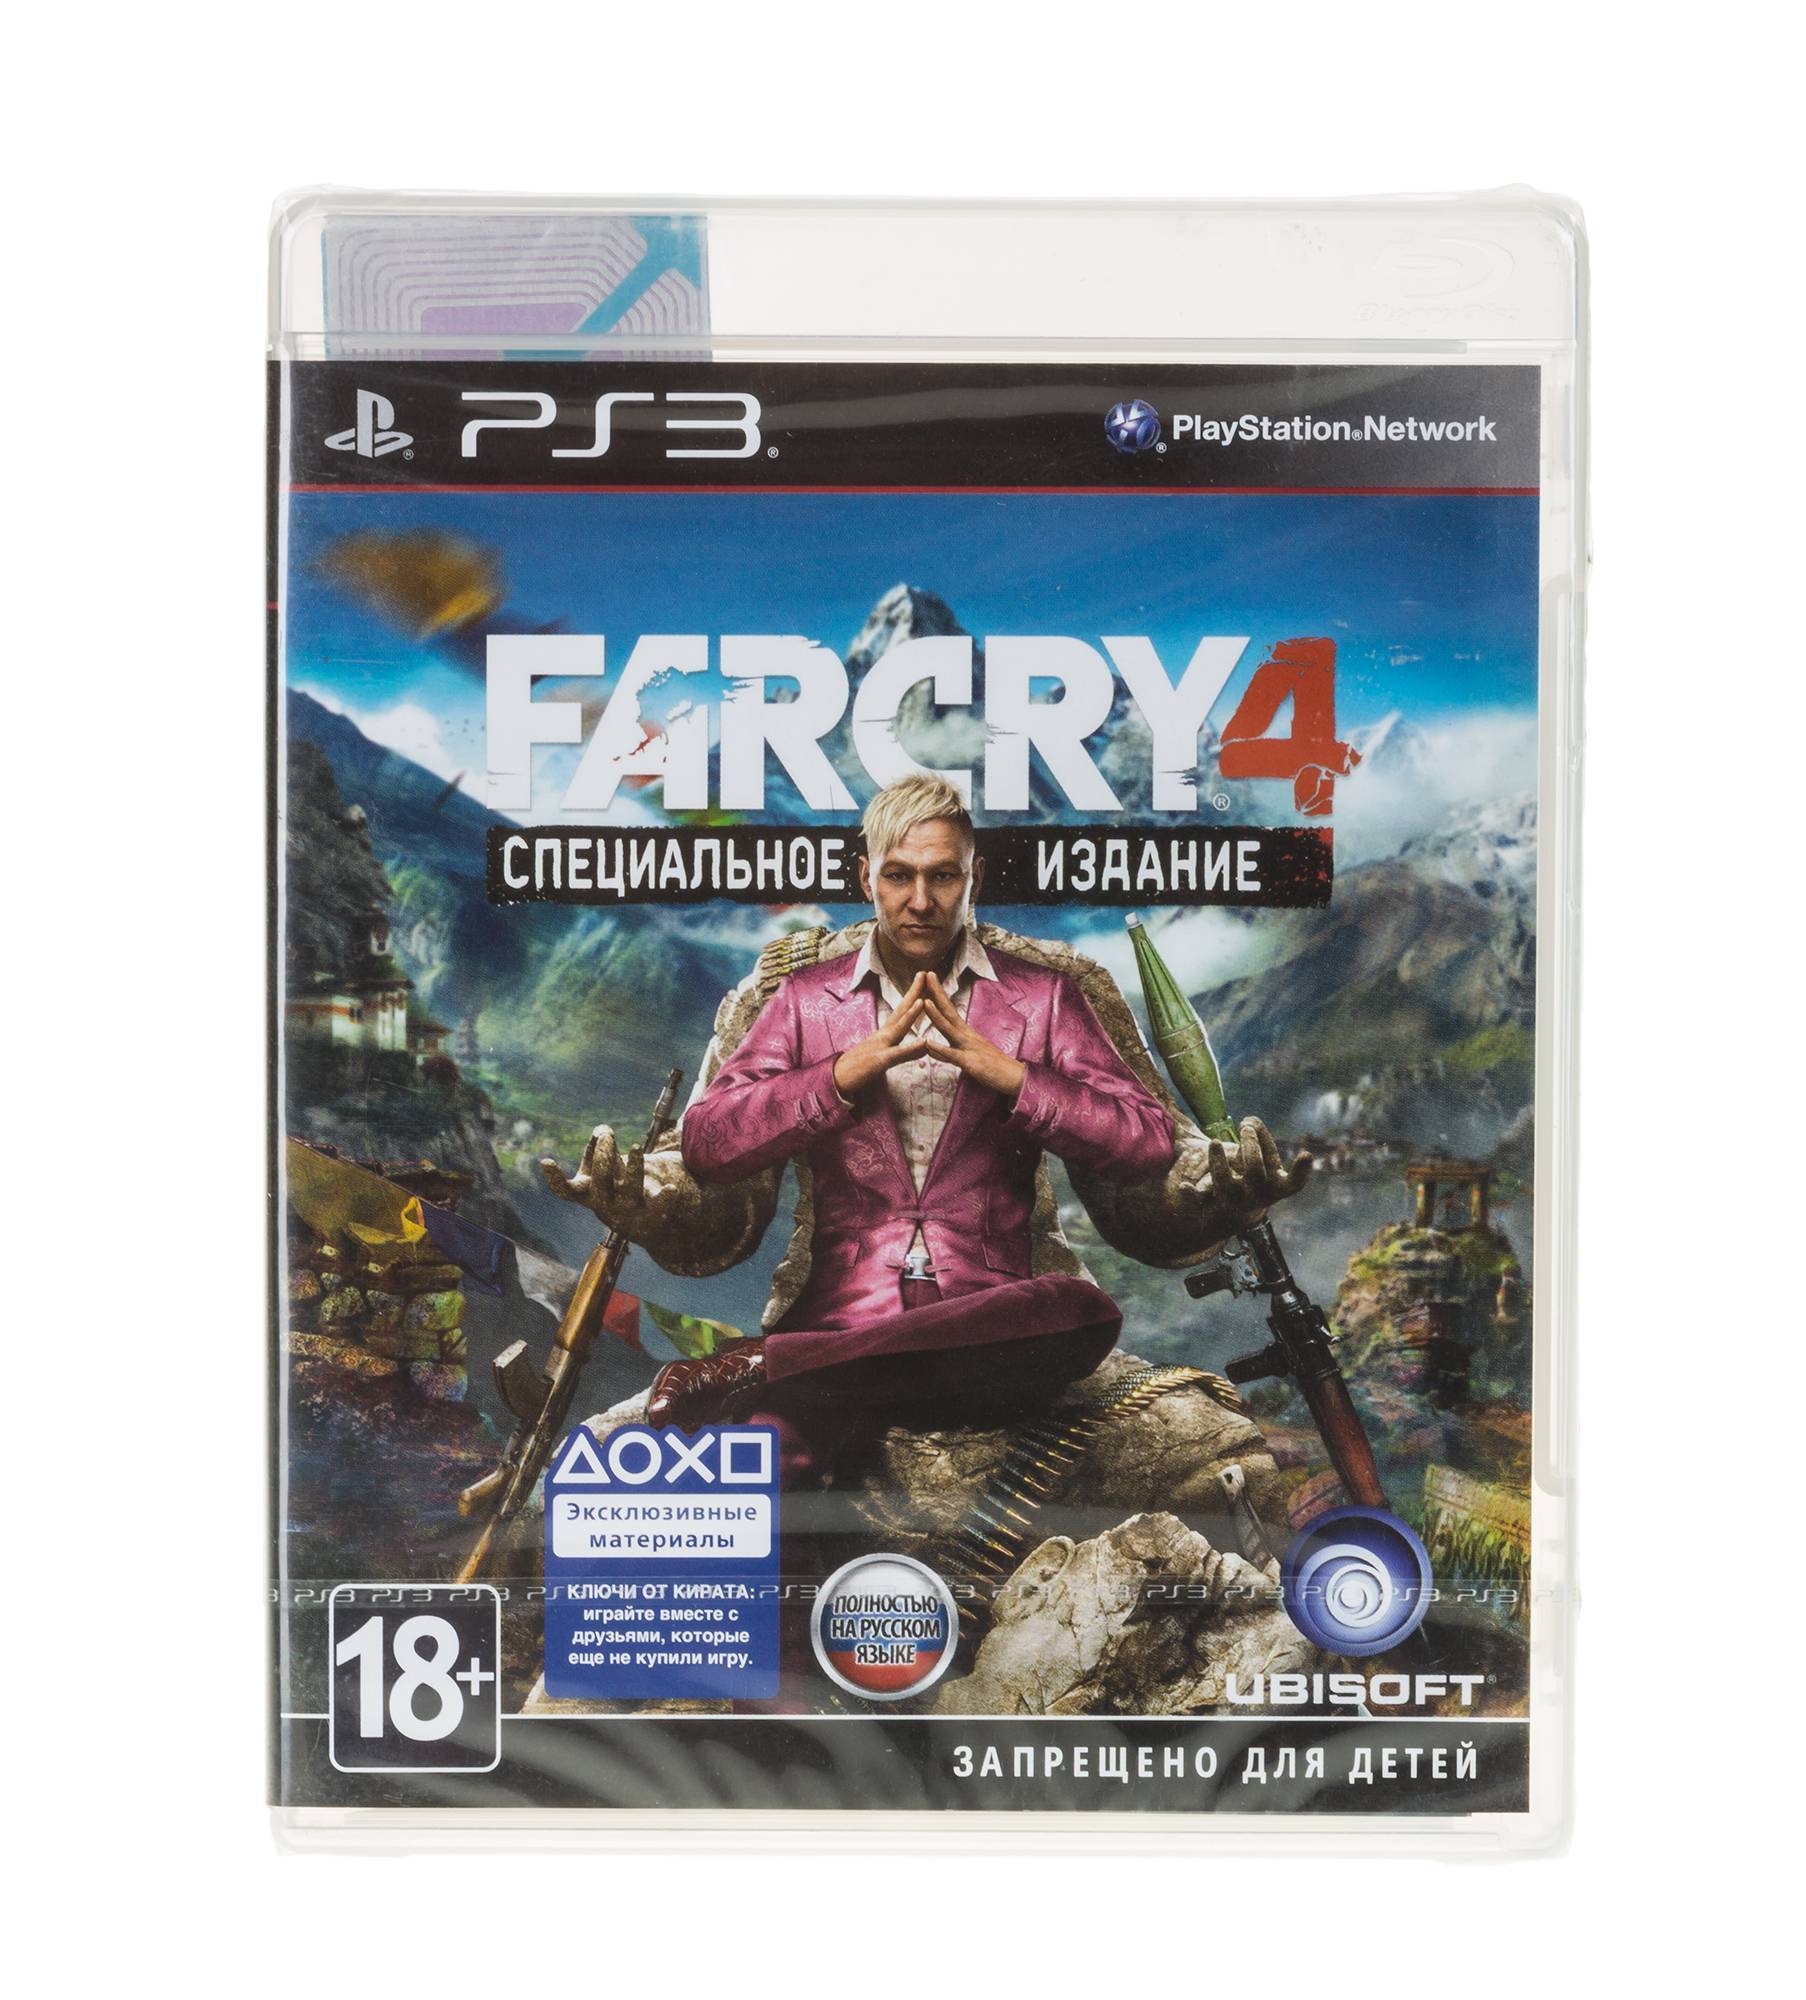 Игры на 4 на пс3. Диск пс4 far Cry 4. Far Cry 4 специальное издание ps3. Far Cry 3 [ps3, русская версия]ps3. Far Cry 6 на пс3 диск.